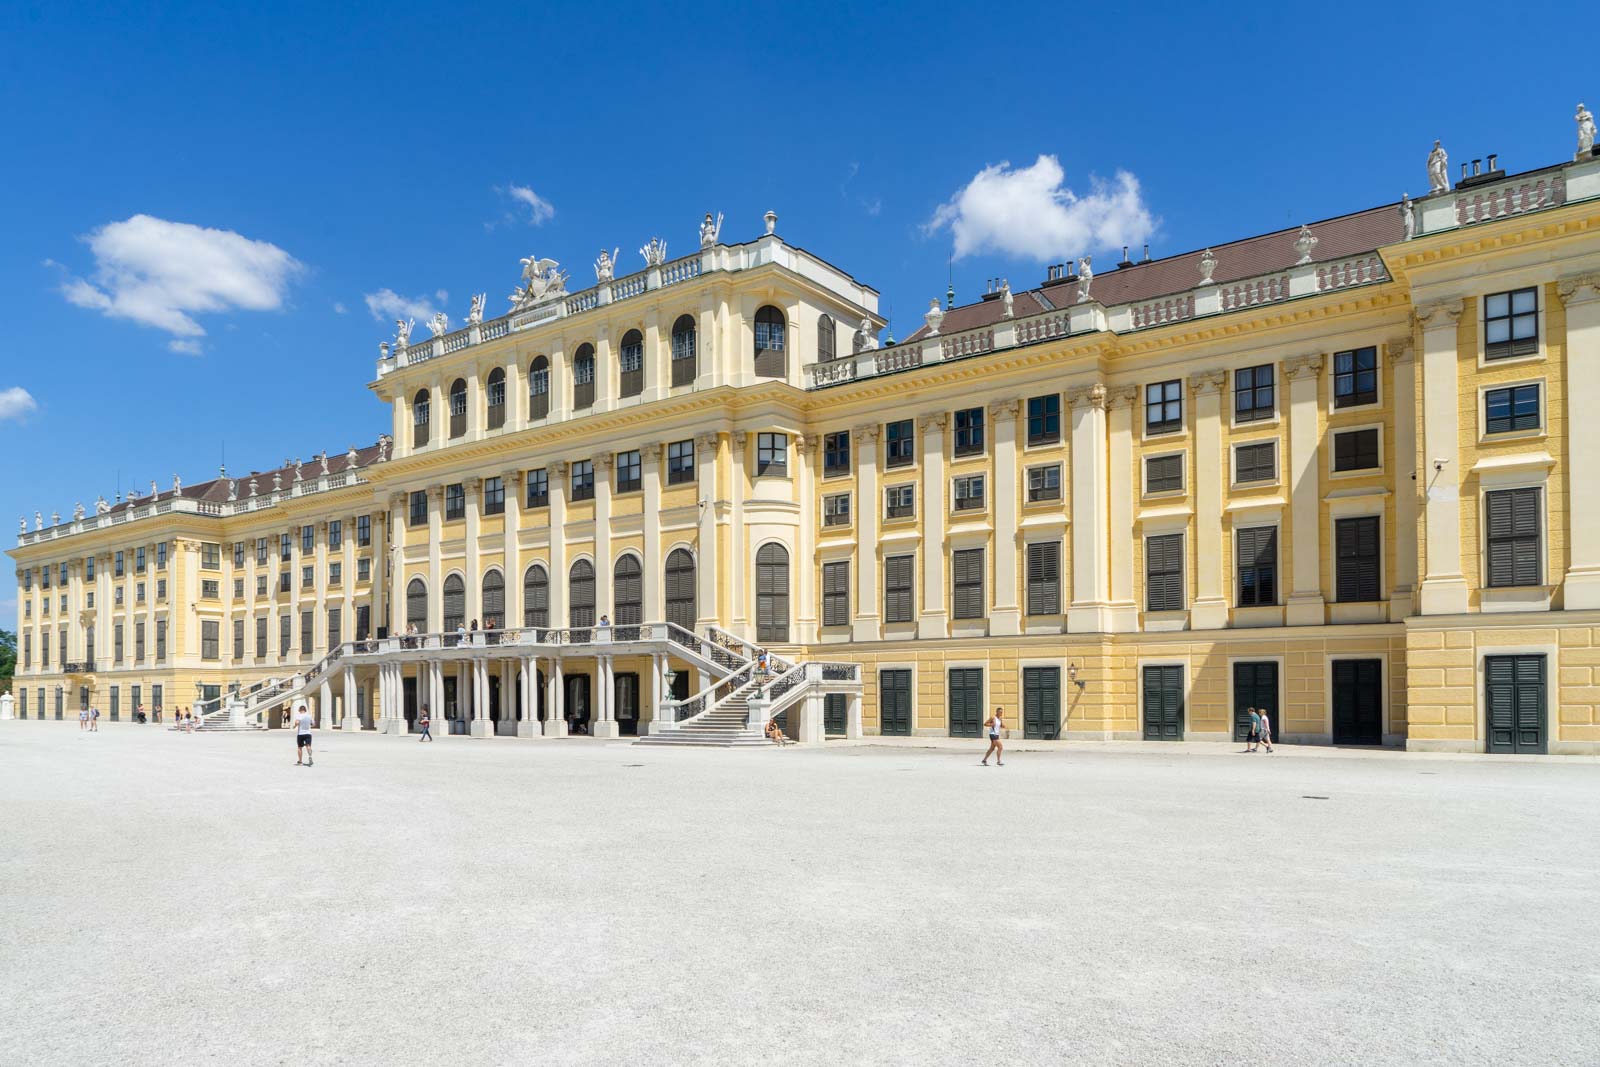 palace in vienna austria